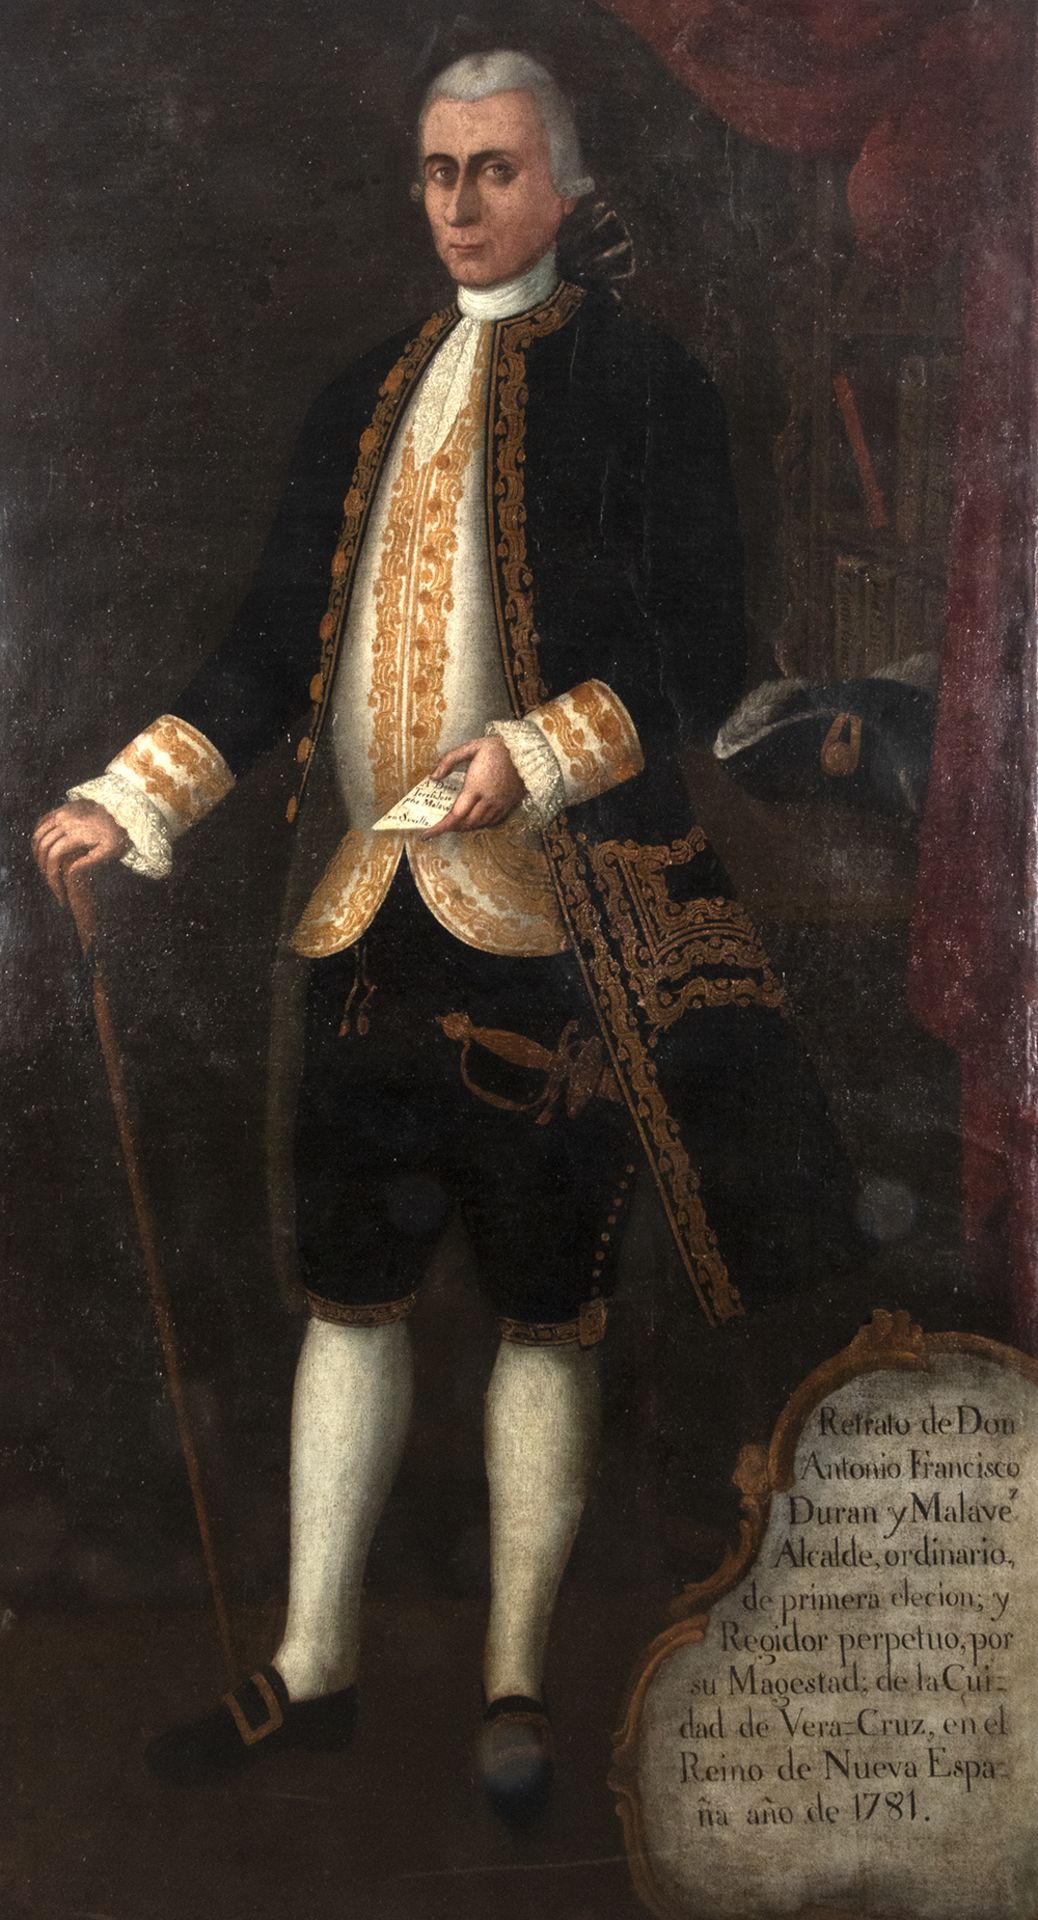 Mexico, 18th century. Portrait of Don Antonio Francisco Duran y Malave.